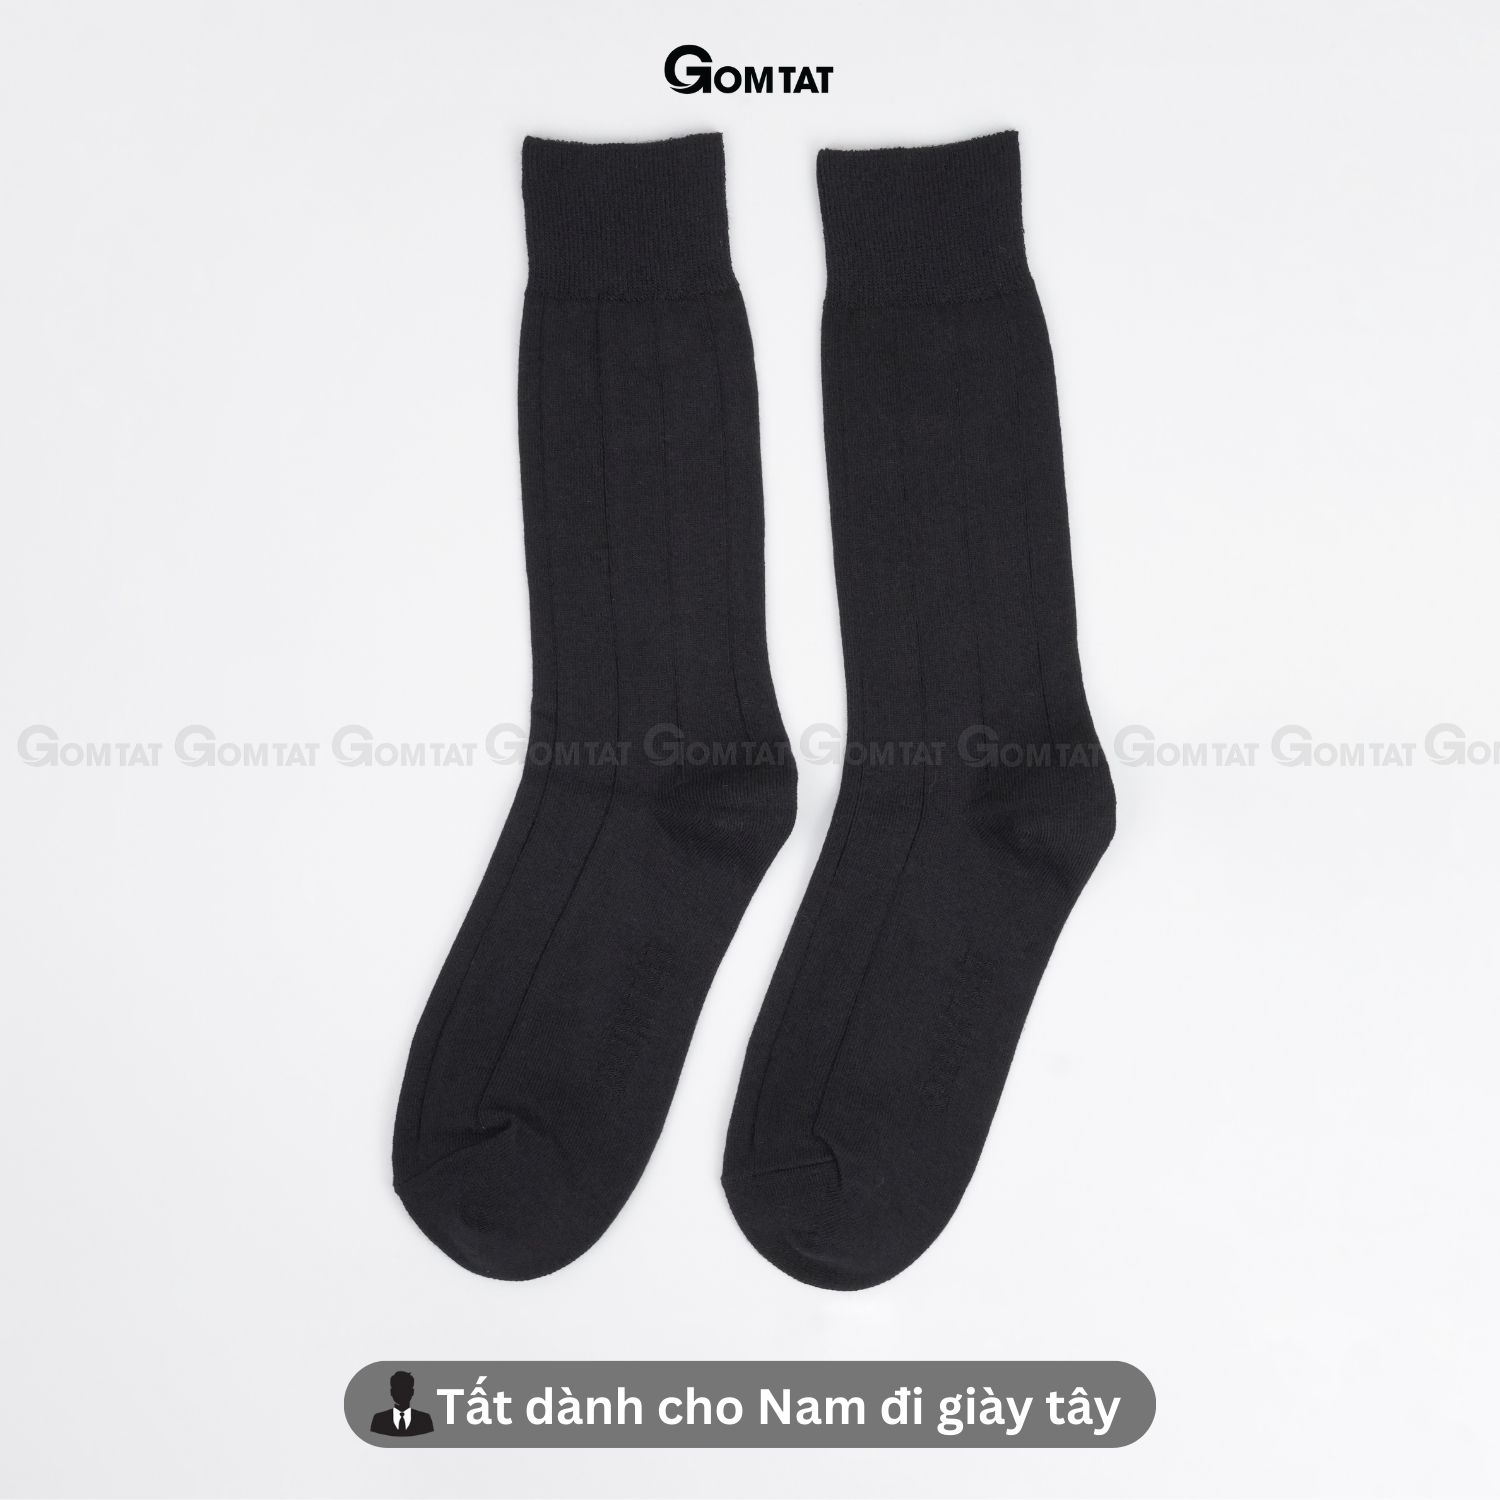 Combo 4 đôi tất vớ nam cổ cao 25cm GOMTAT mẫu gân chìm màu đen, chất liệu cotton thoáng mát êm chân - GOM-MIX09-DEN-CB4